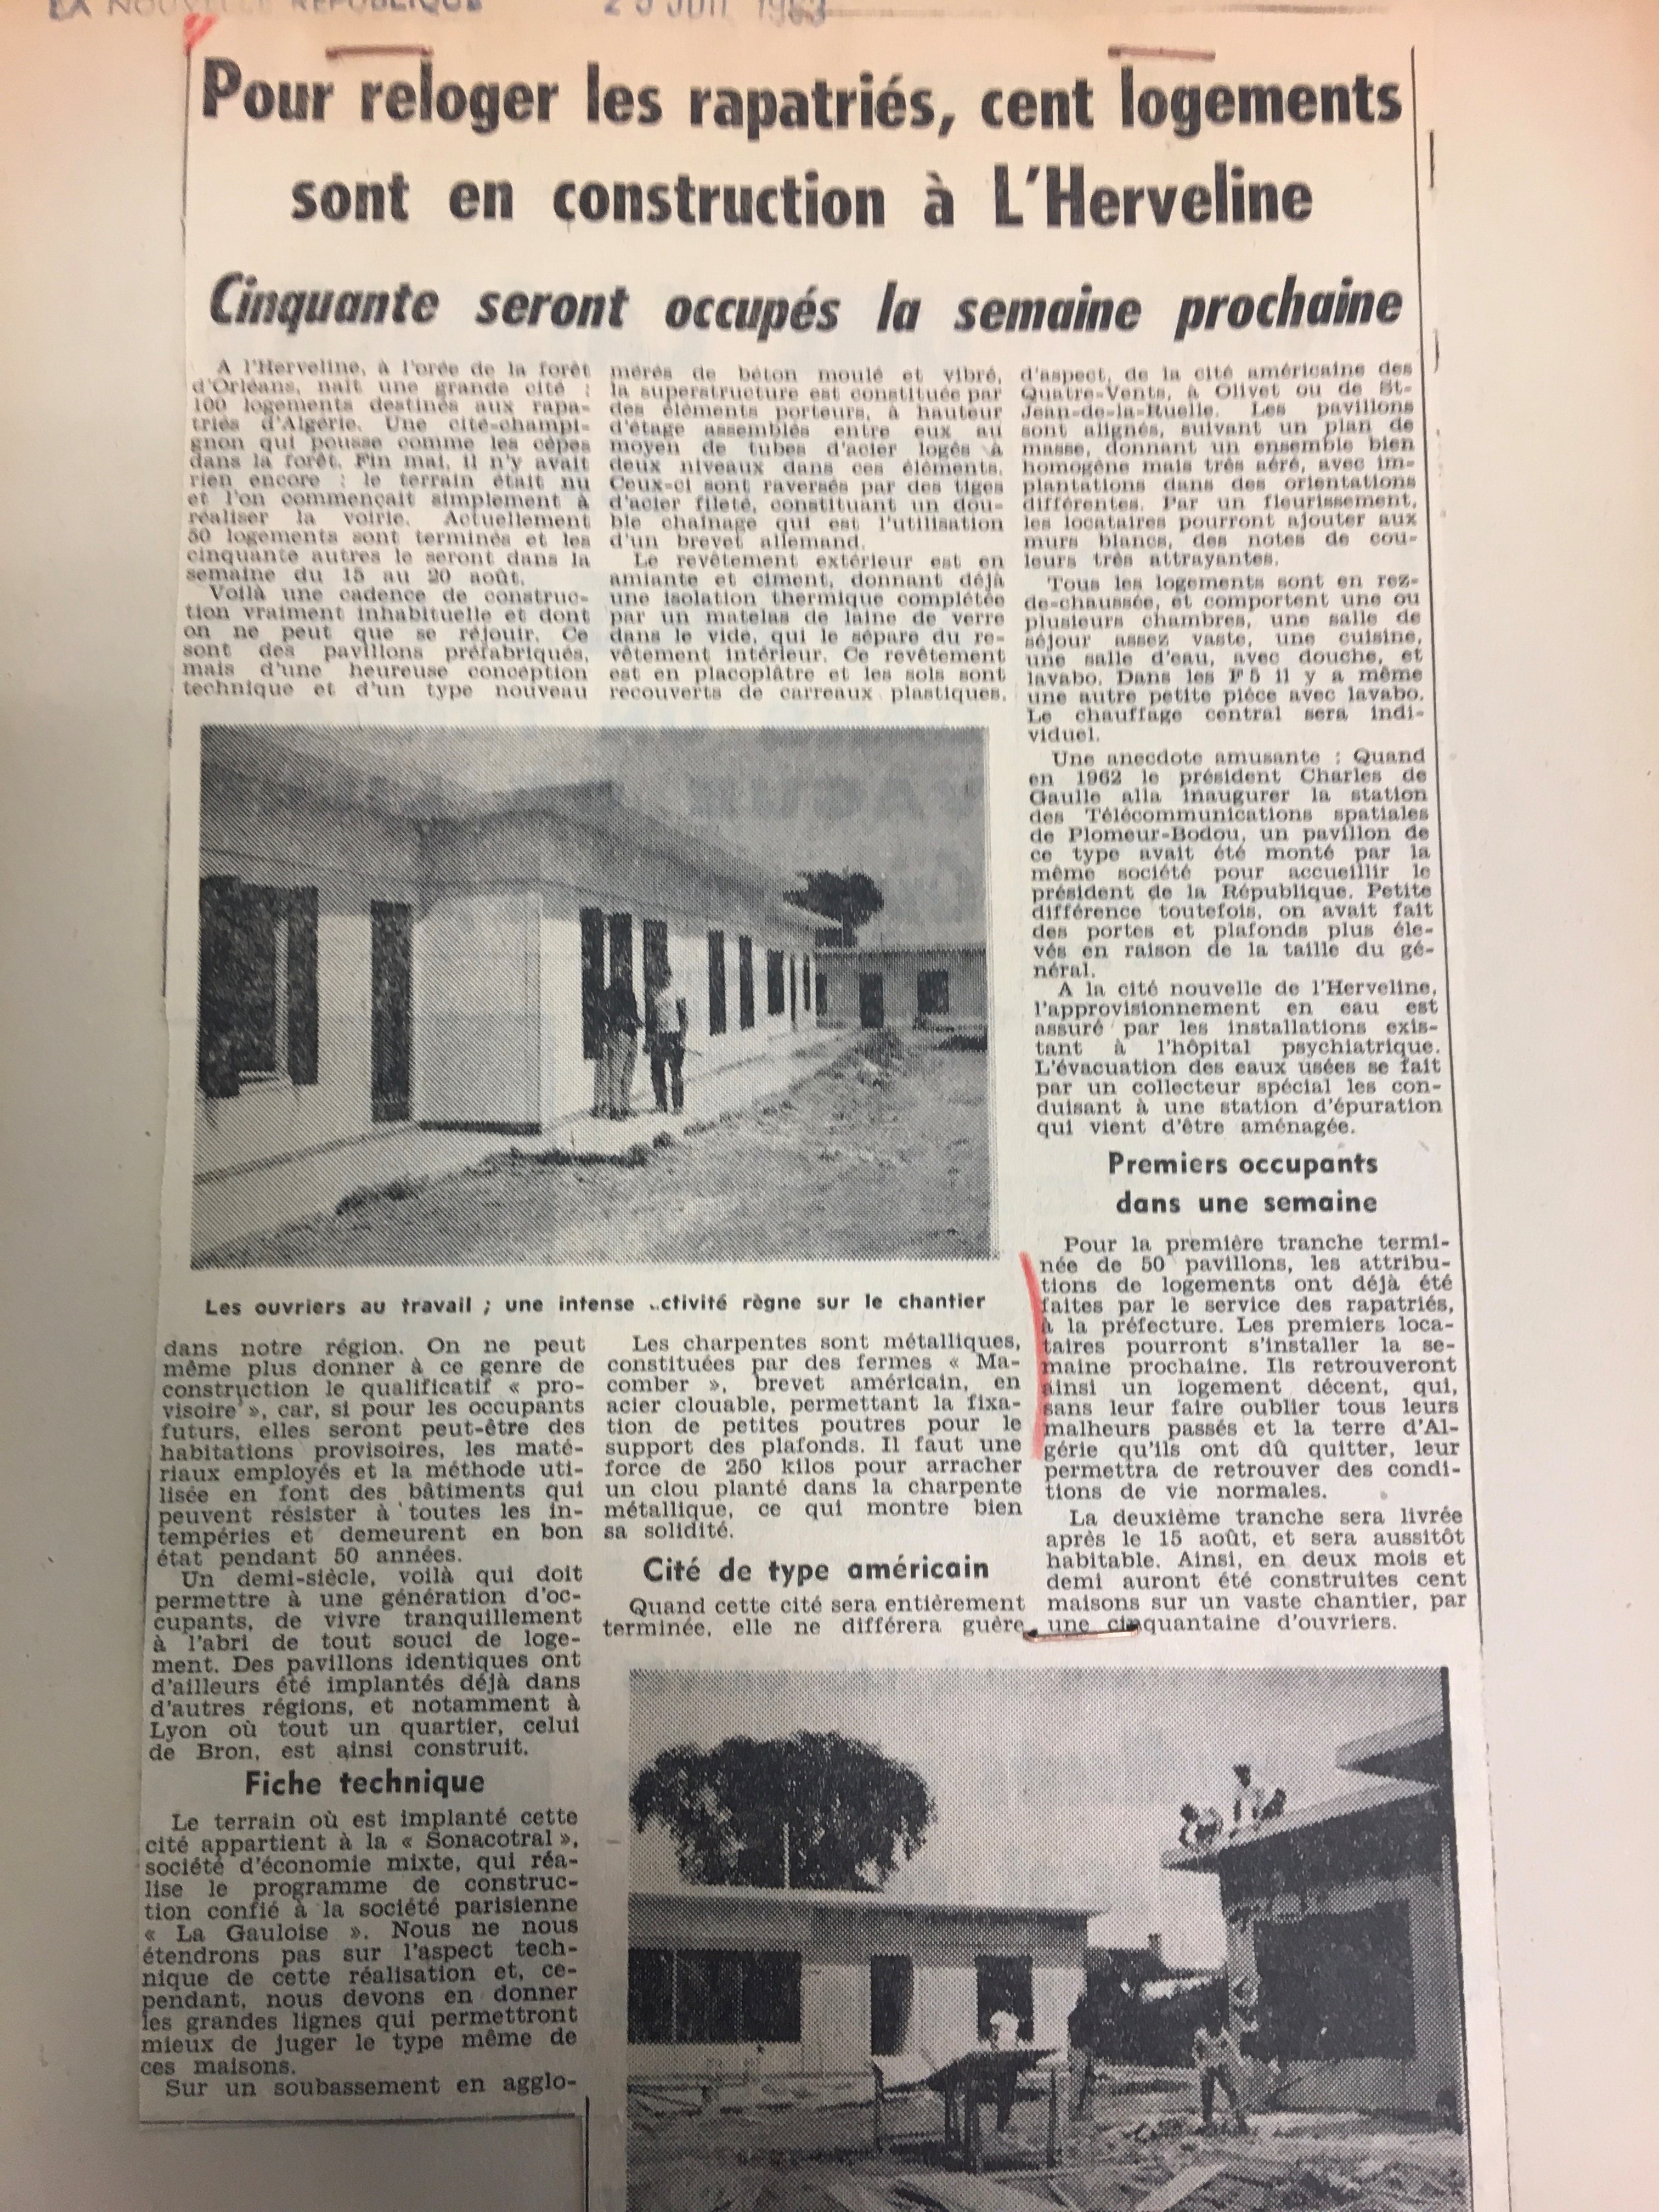 Article de journal relatif à la construction de la cité de l'Herveline (Loiret) @ La Nouvelle République 25/06/1963